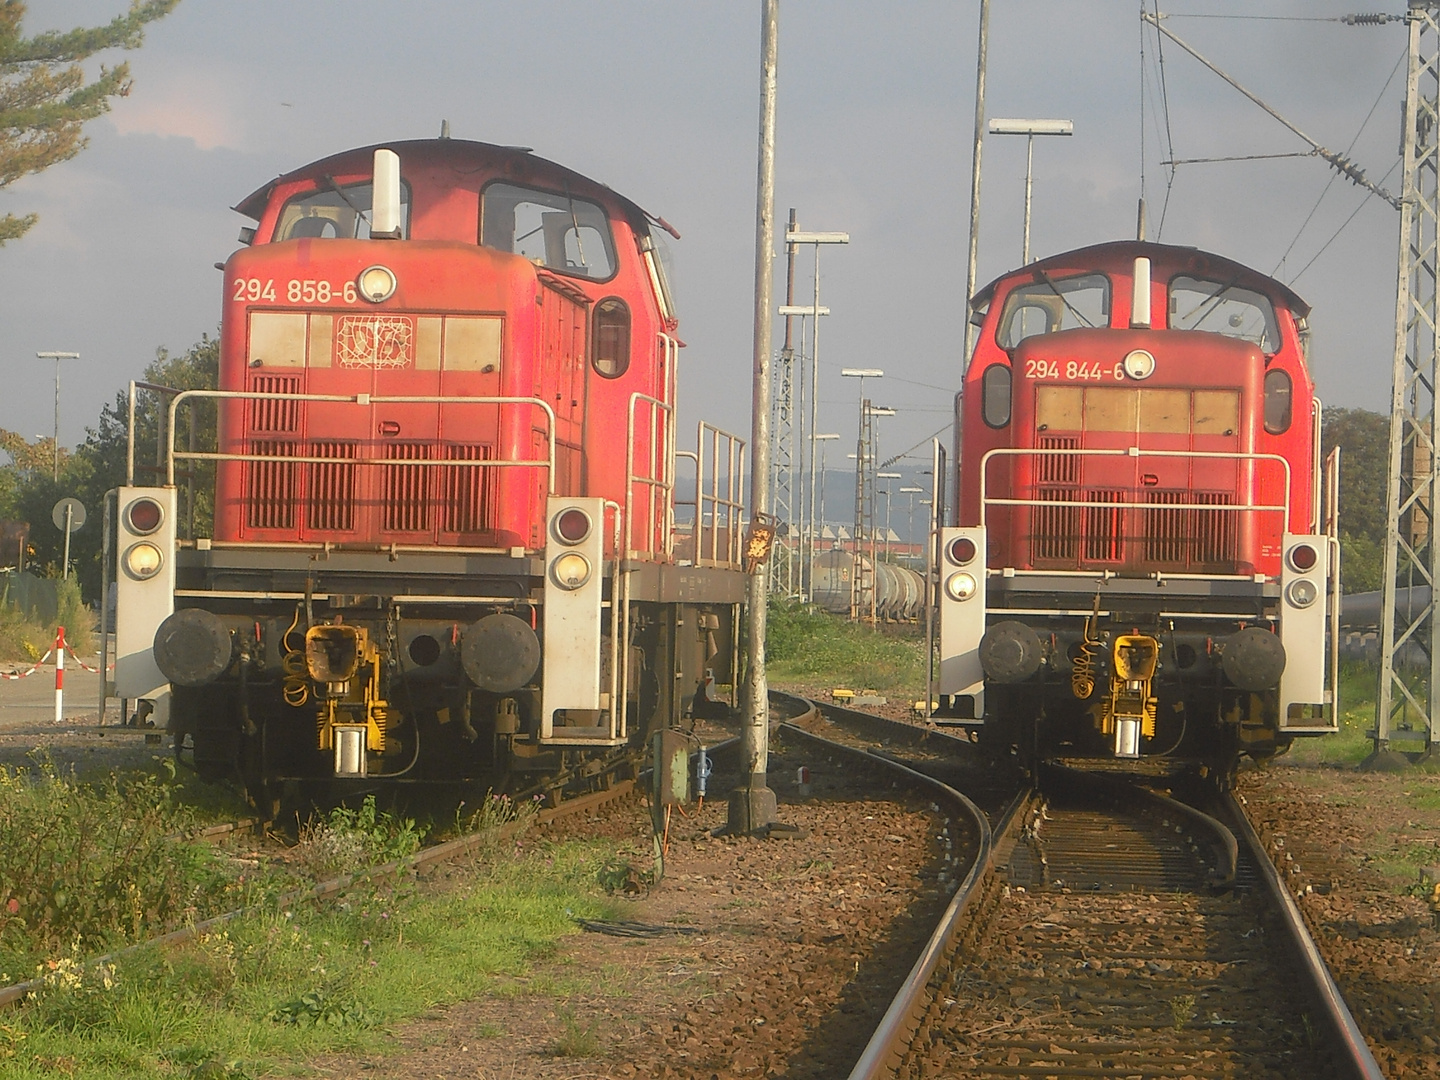 Baureihe 294 844-6 und 294 858-6 . Mannheim, Herbst 2014